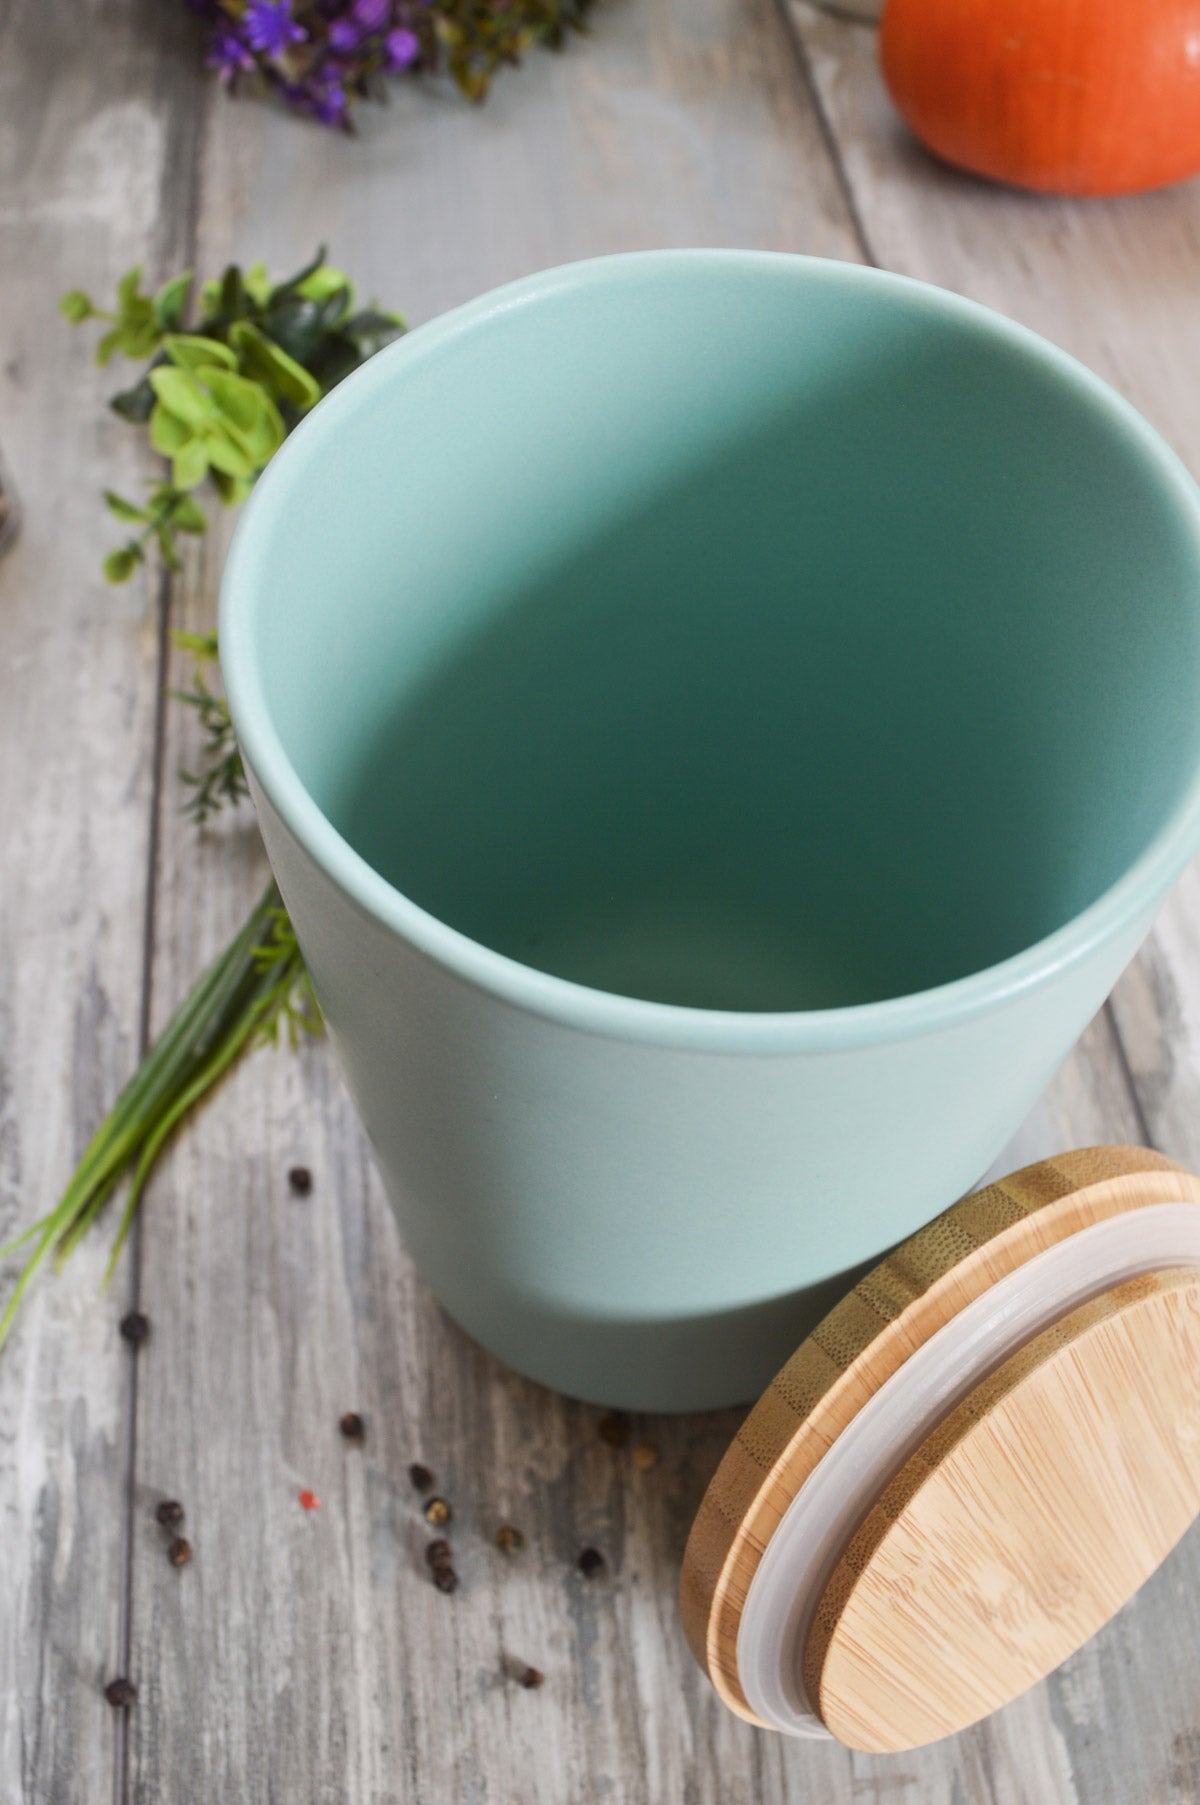 Pot de rangement avec couvercle en bois, récipient de rangement en céramique turquoise, pot en céramique